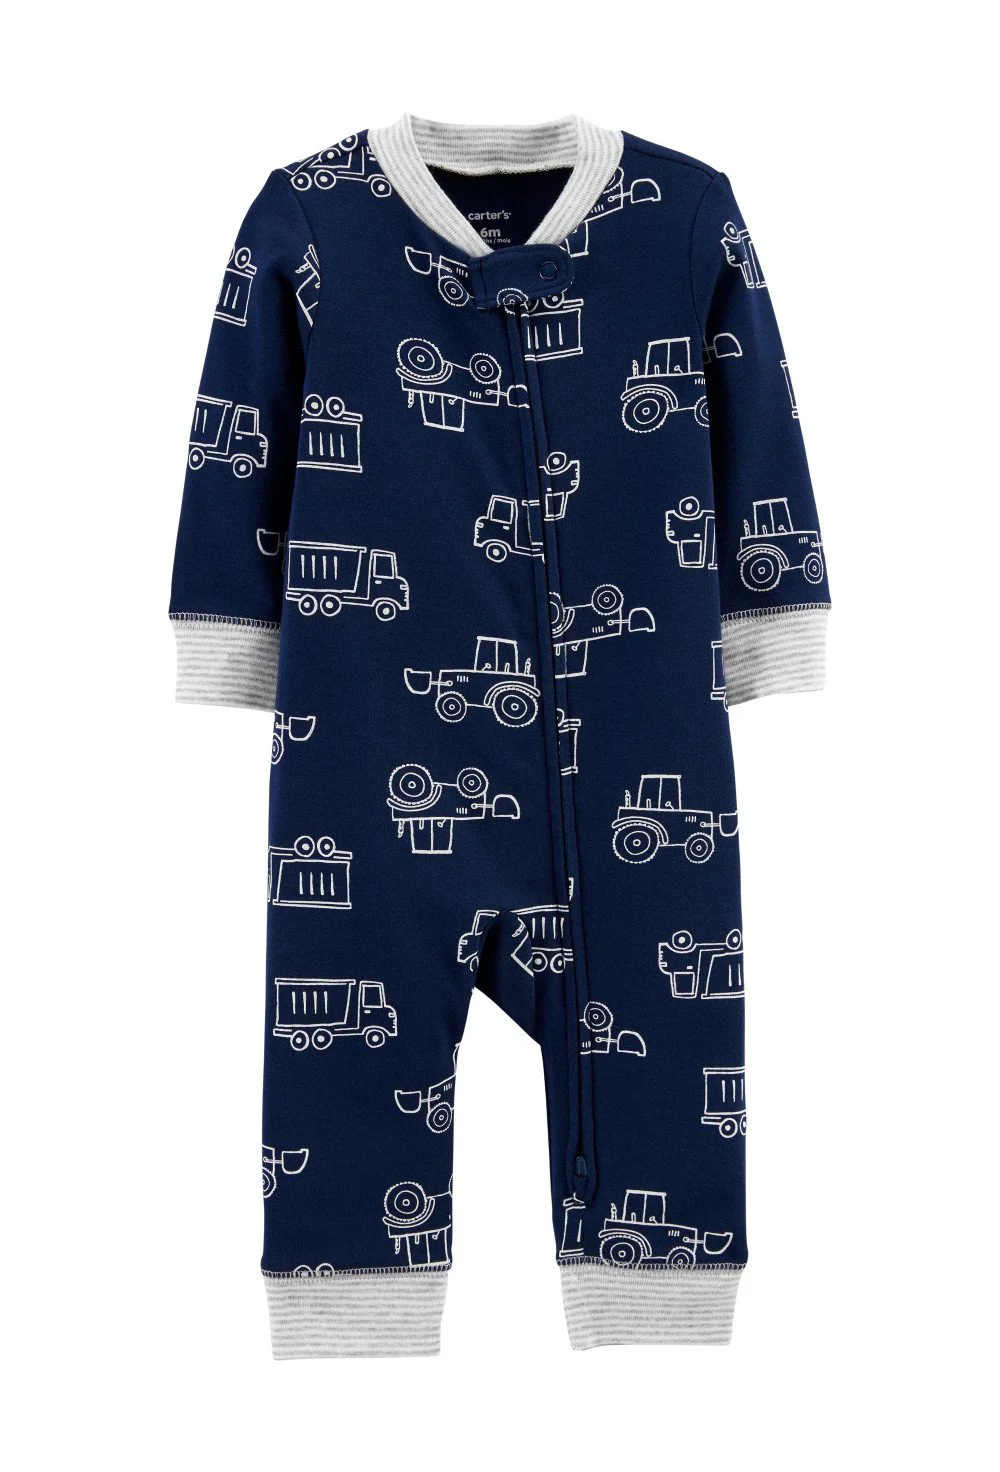 Carter's Pijama bebe cu fermoar reversibil Constructii